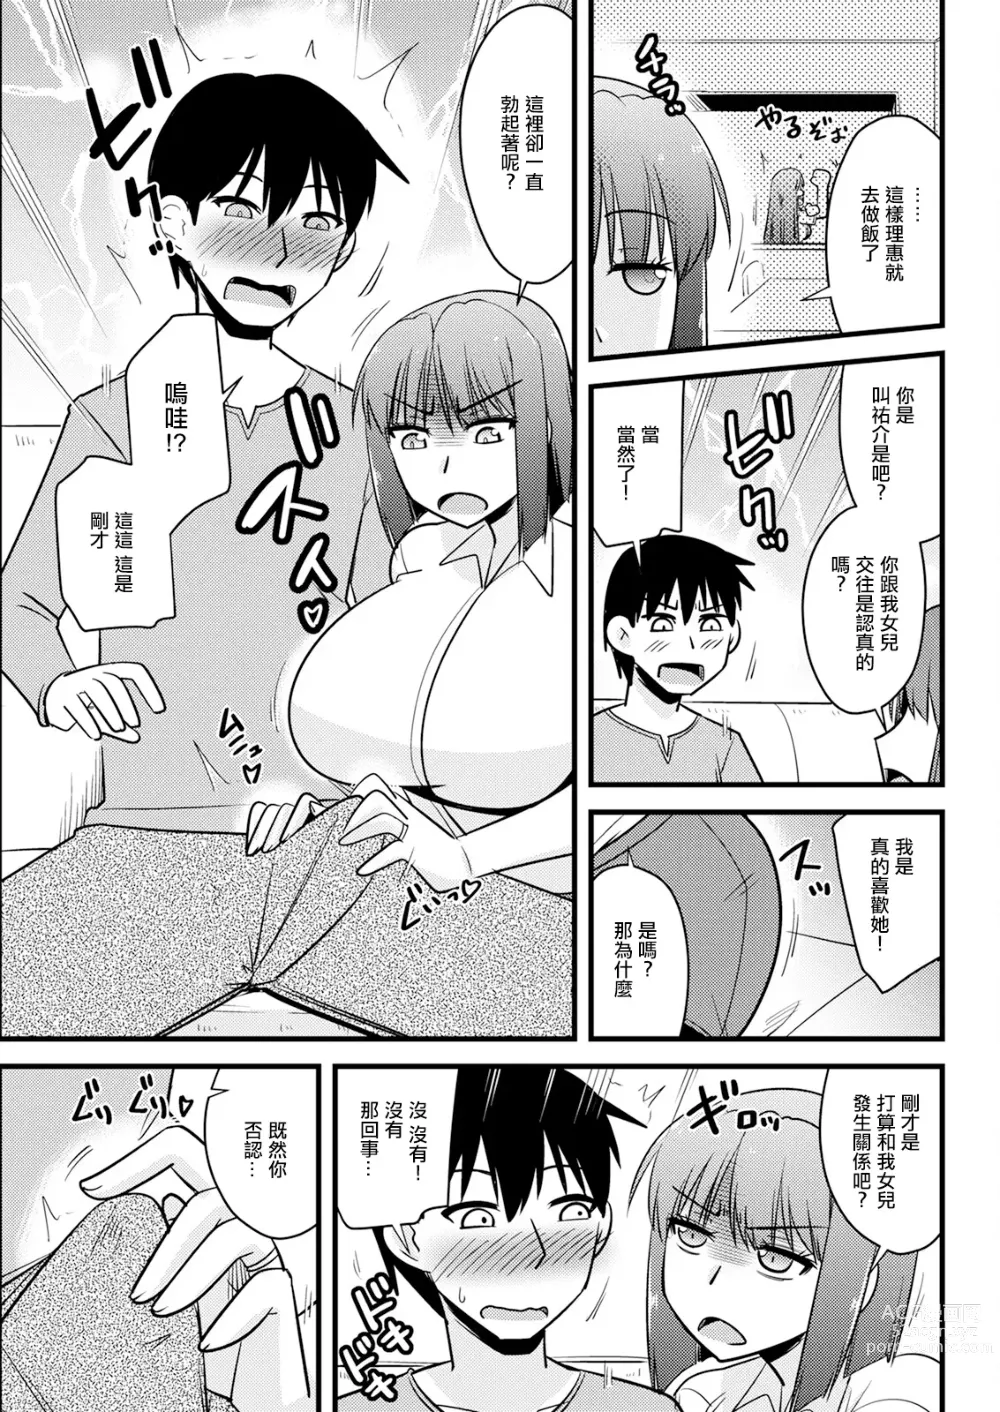 Page 3 of manga Kanojo no Haha no Kousai Test